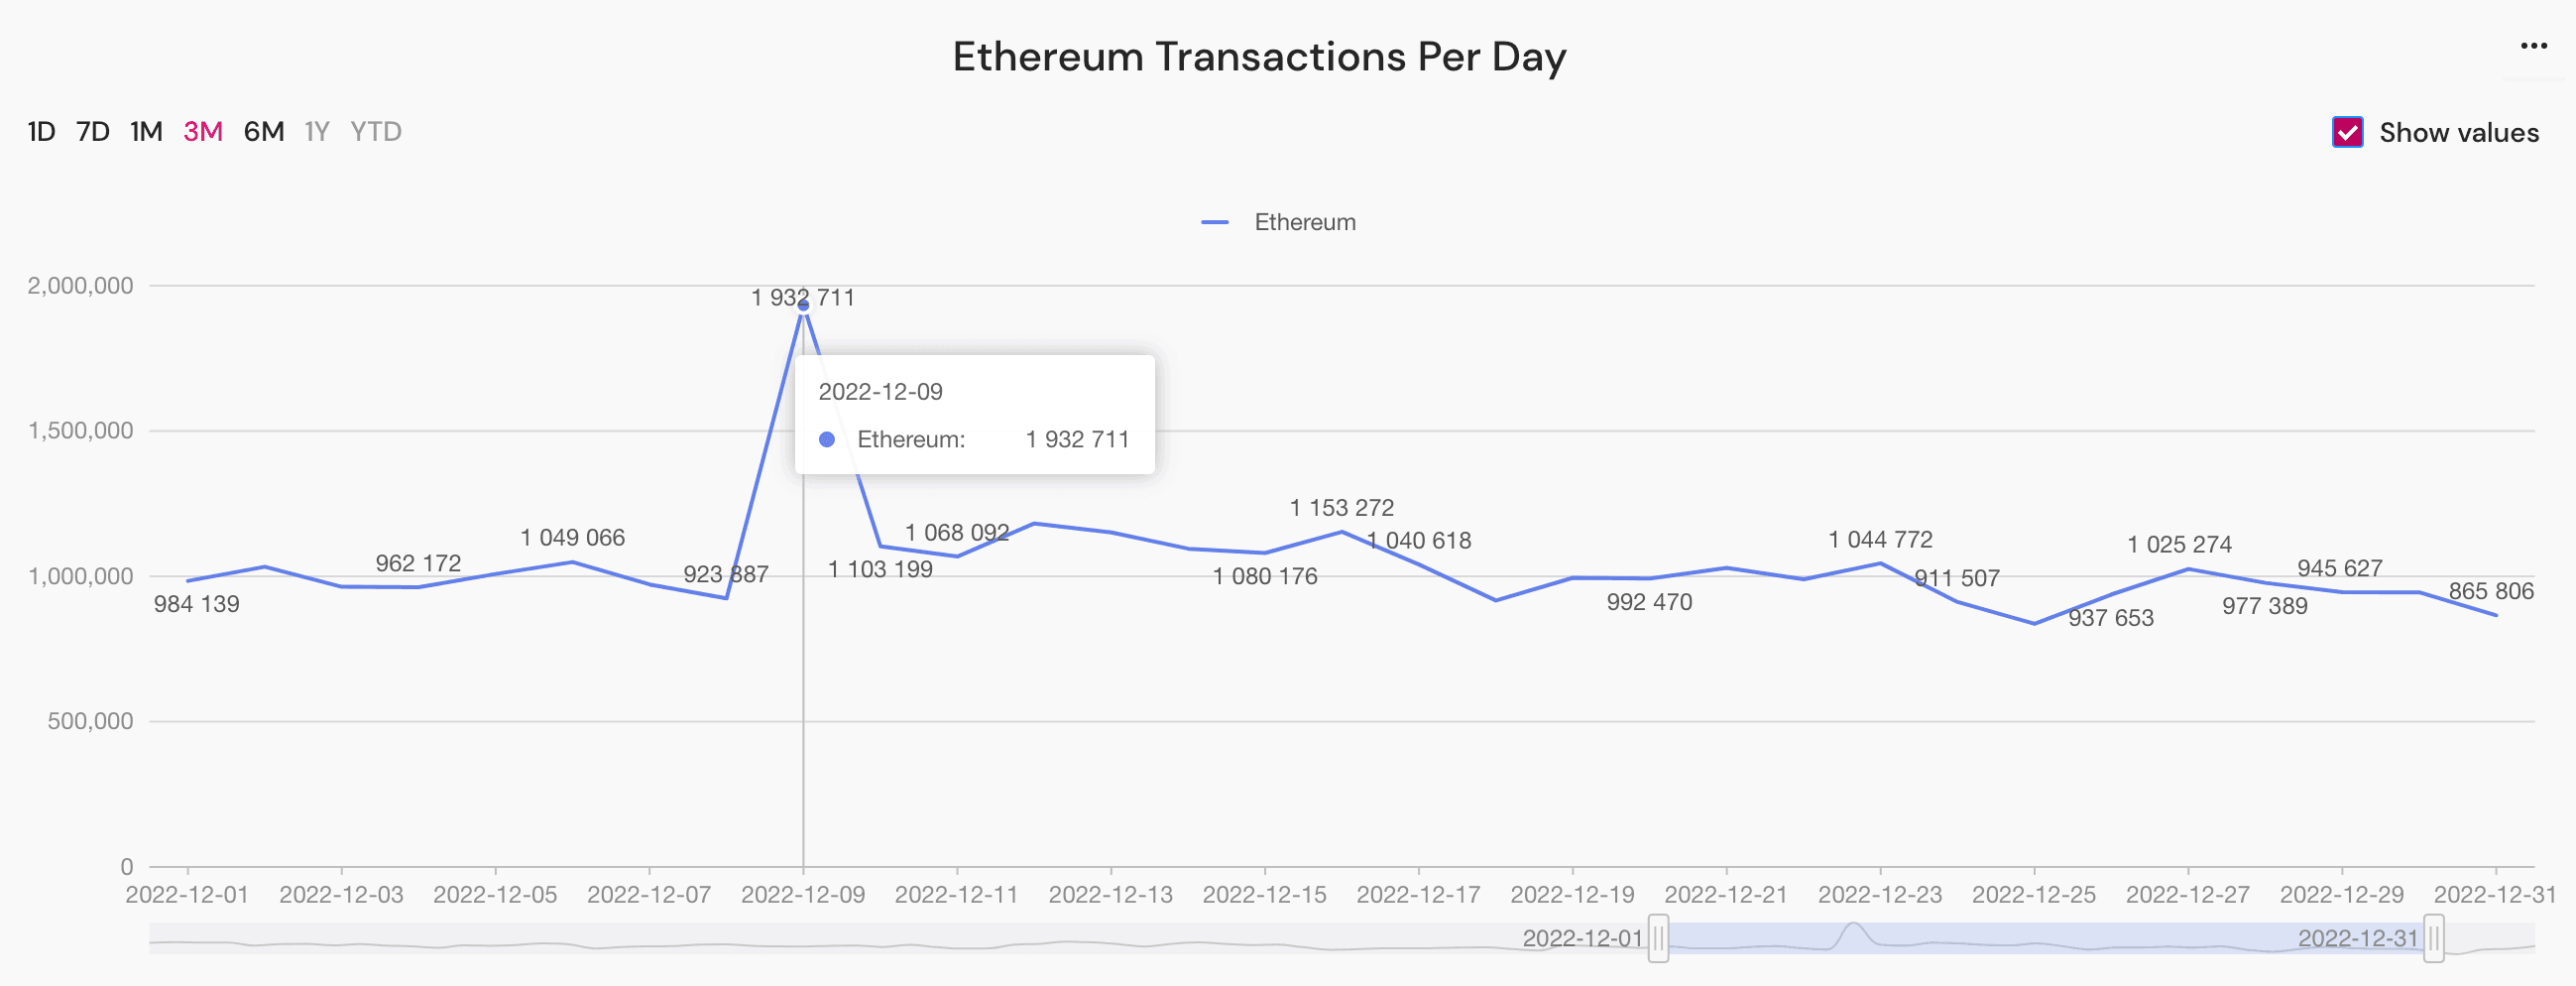 ethereum transactions peak, December 2022